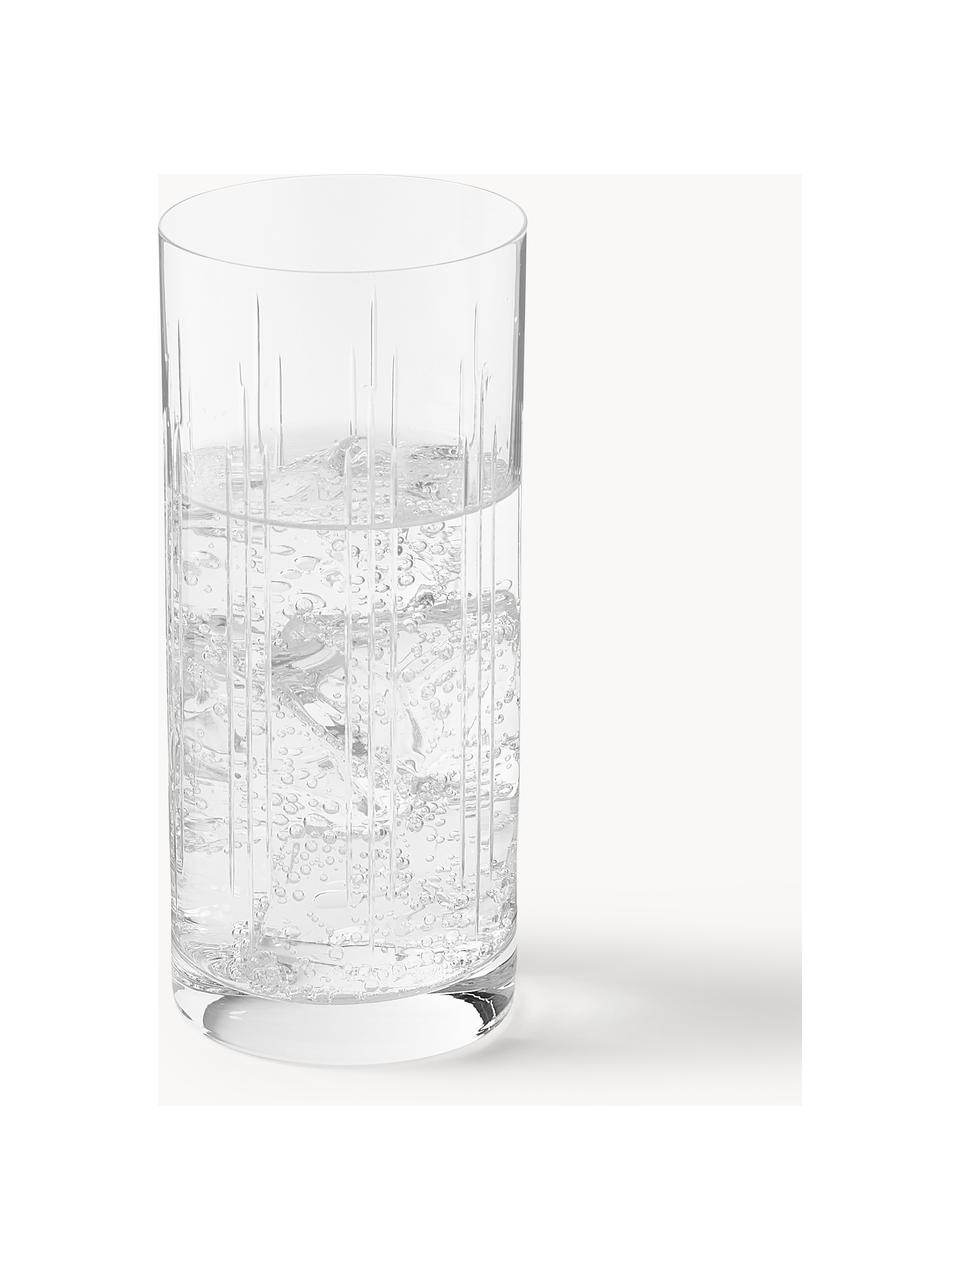 Kristall-Longdrinkgläser Felipe, 4 Stück, Crystal glas/Kristallglas, Transparent, Ø 6 x H 15 cm, 300 ml